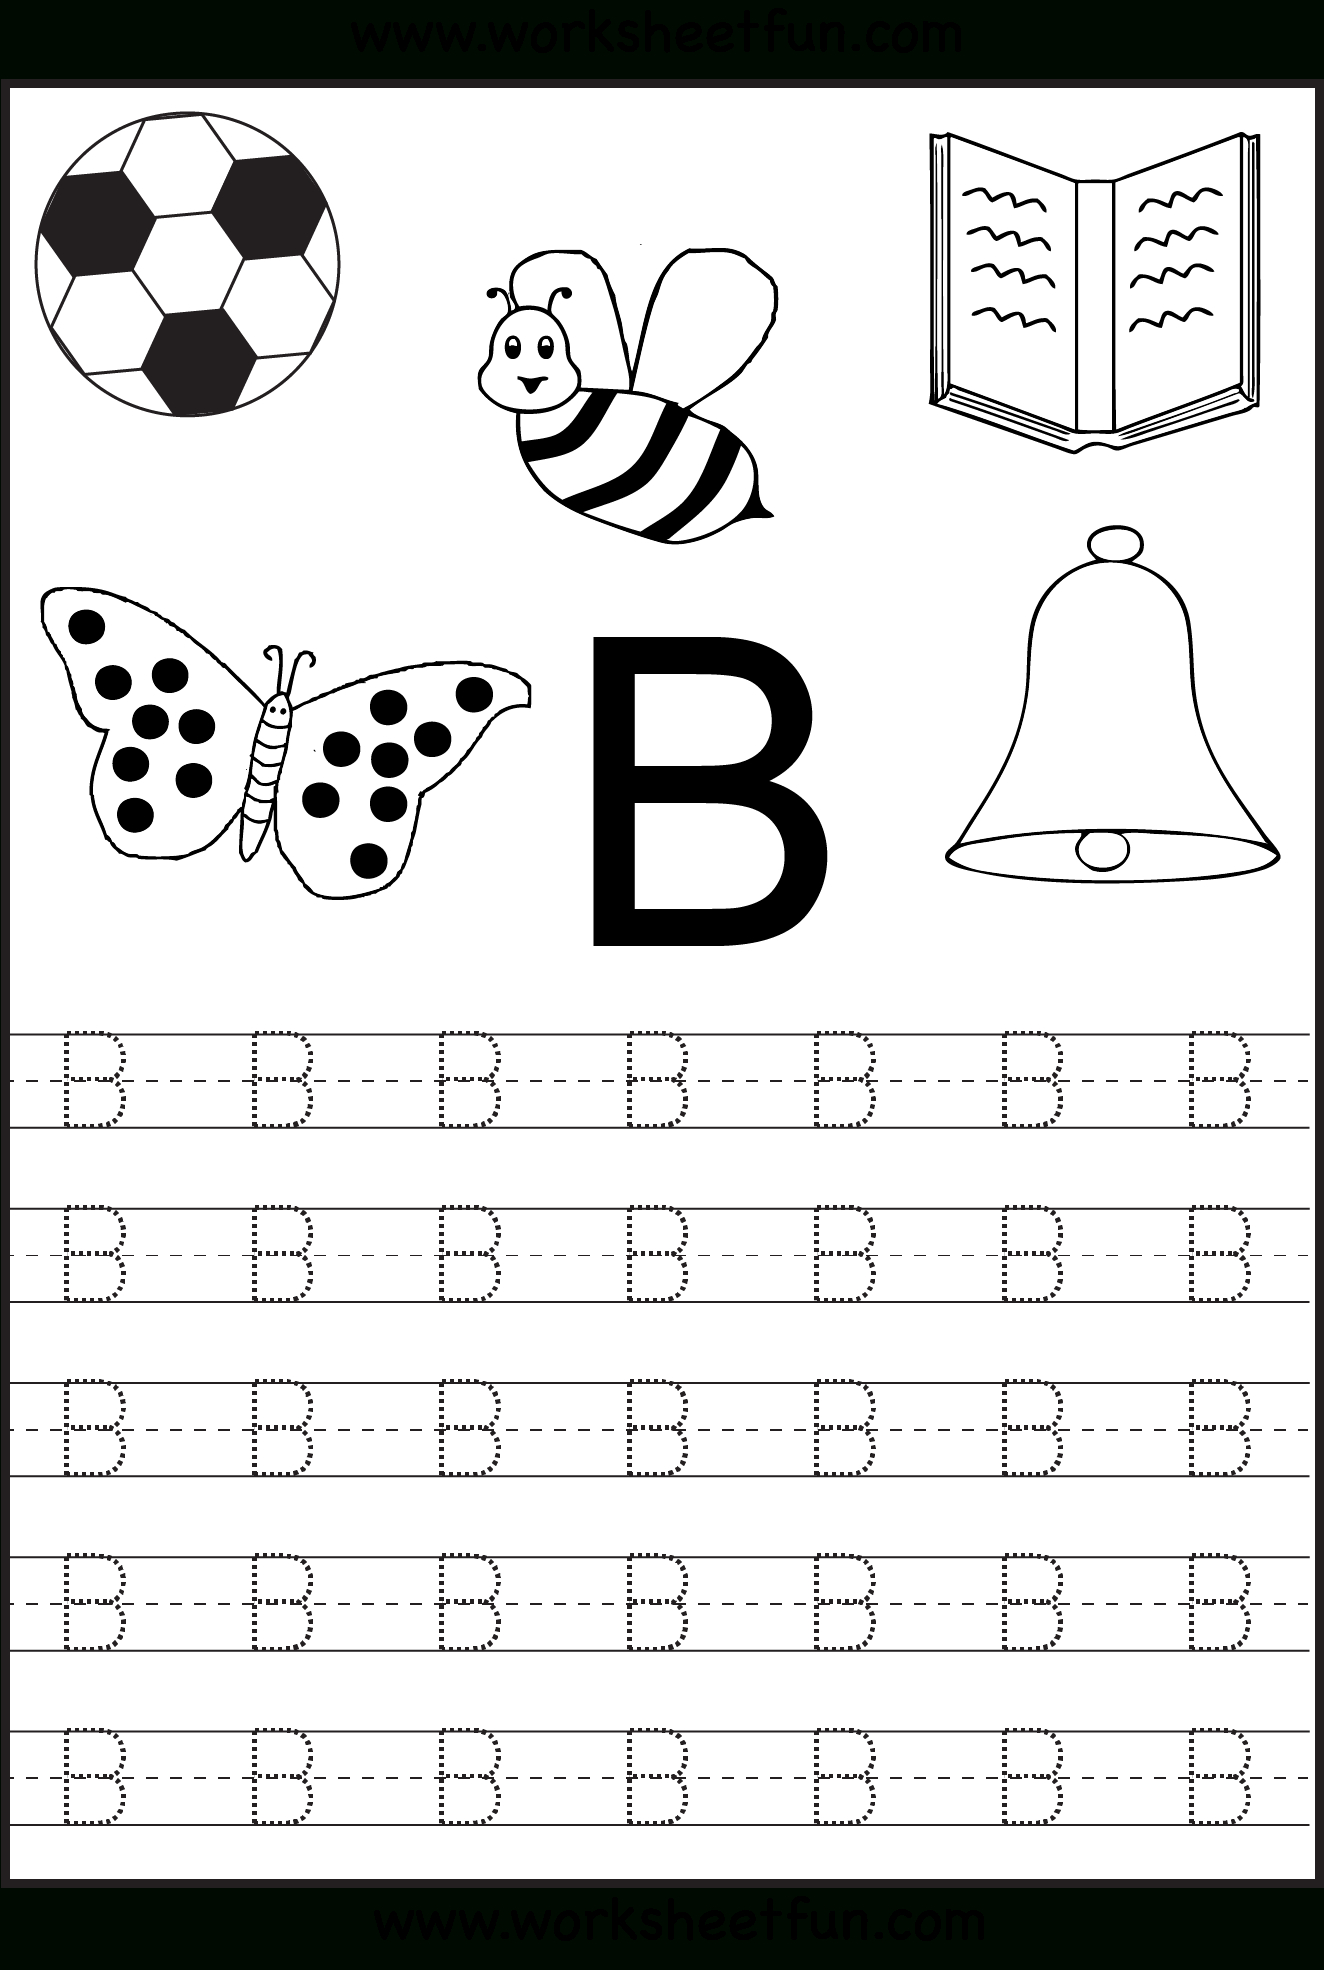 Free Printable Letter Tracing Worksheets For Kindergarten intended for Alphabet Tracing Worksheets For Kindergarten